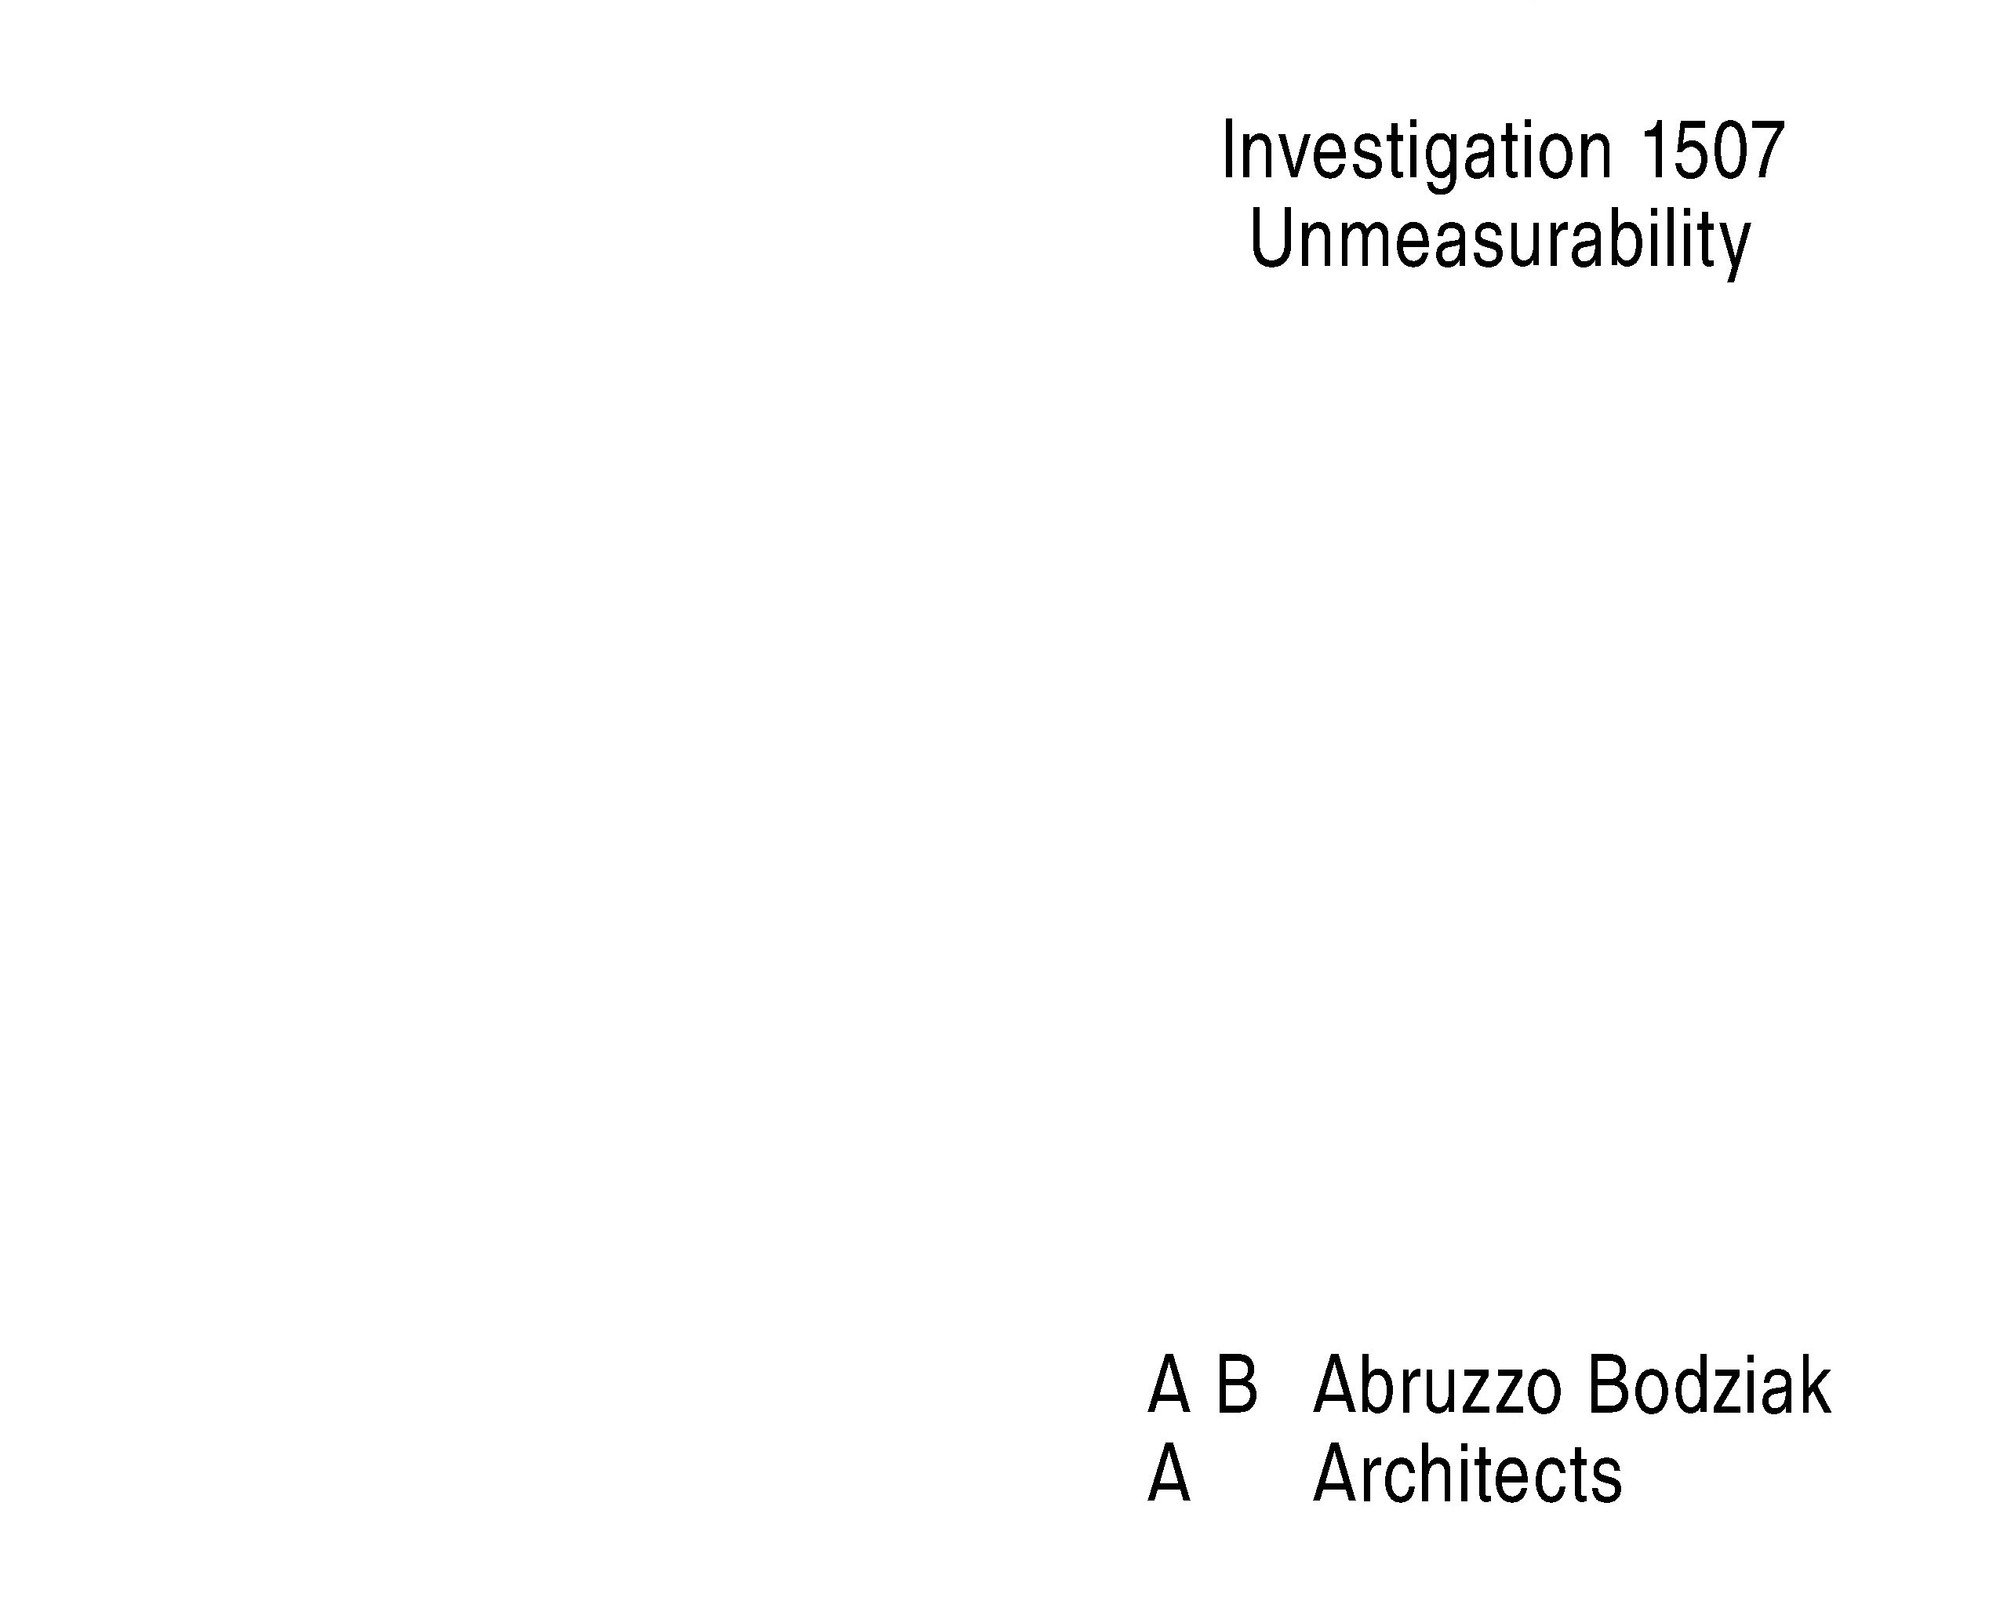 1507 unmeasurability investigation page 02 2000 xxx q85